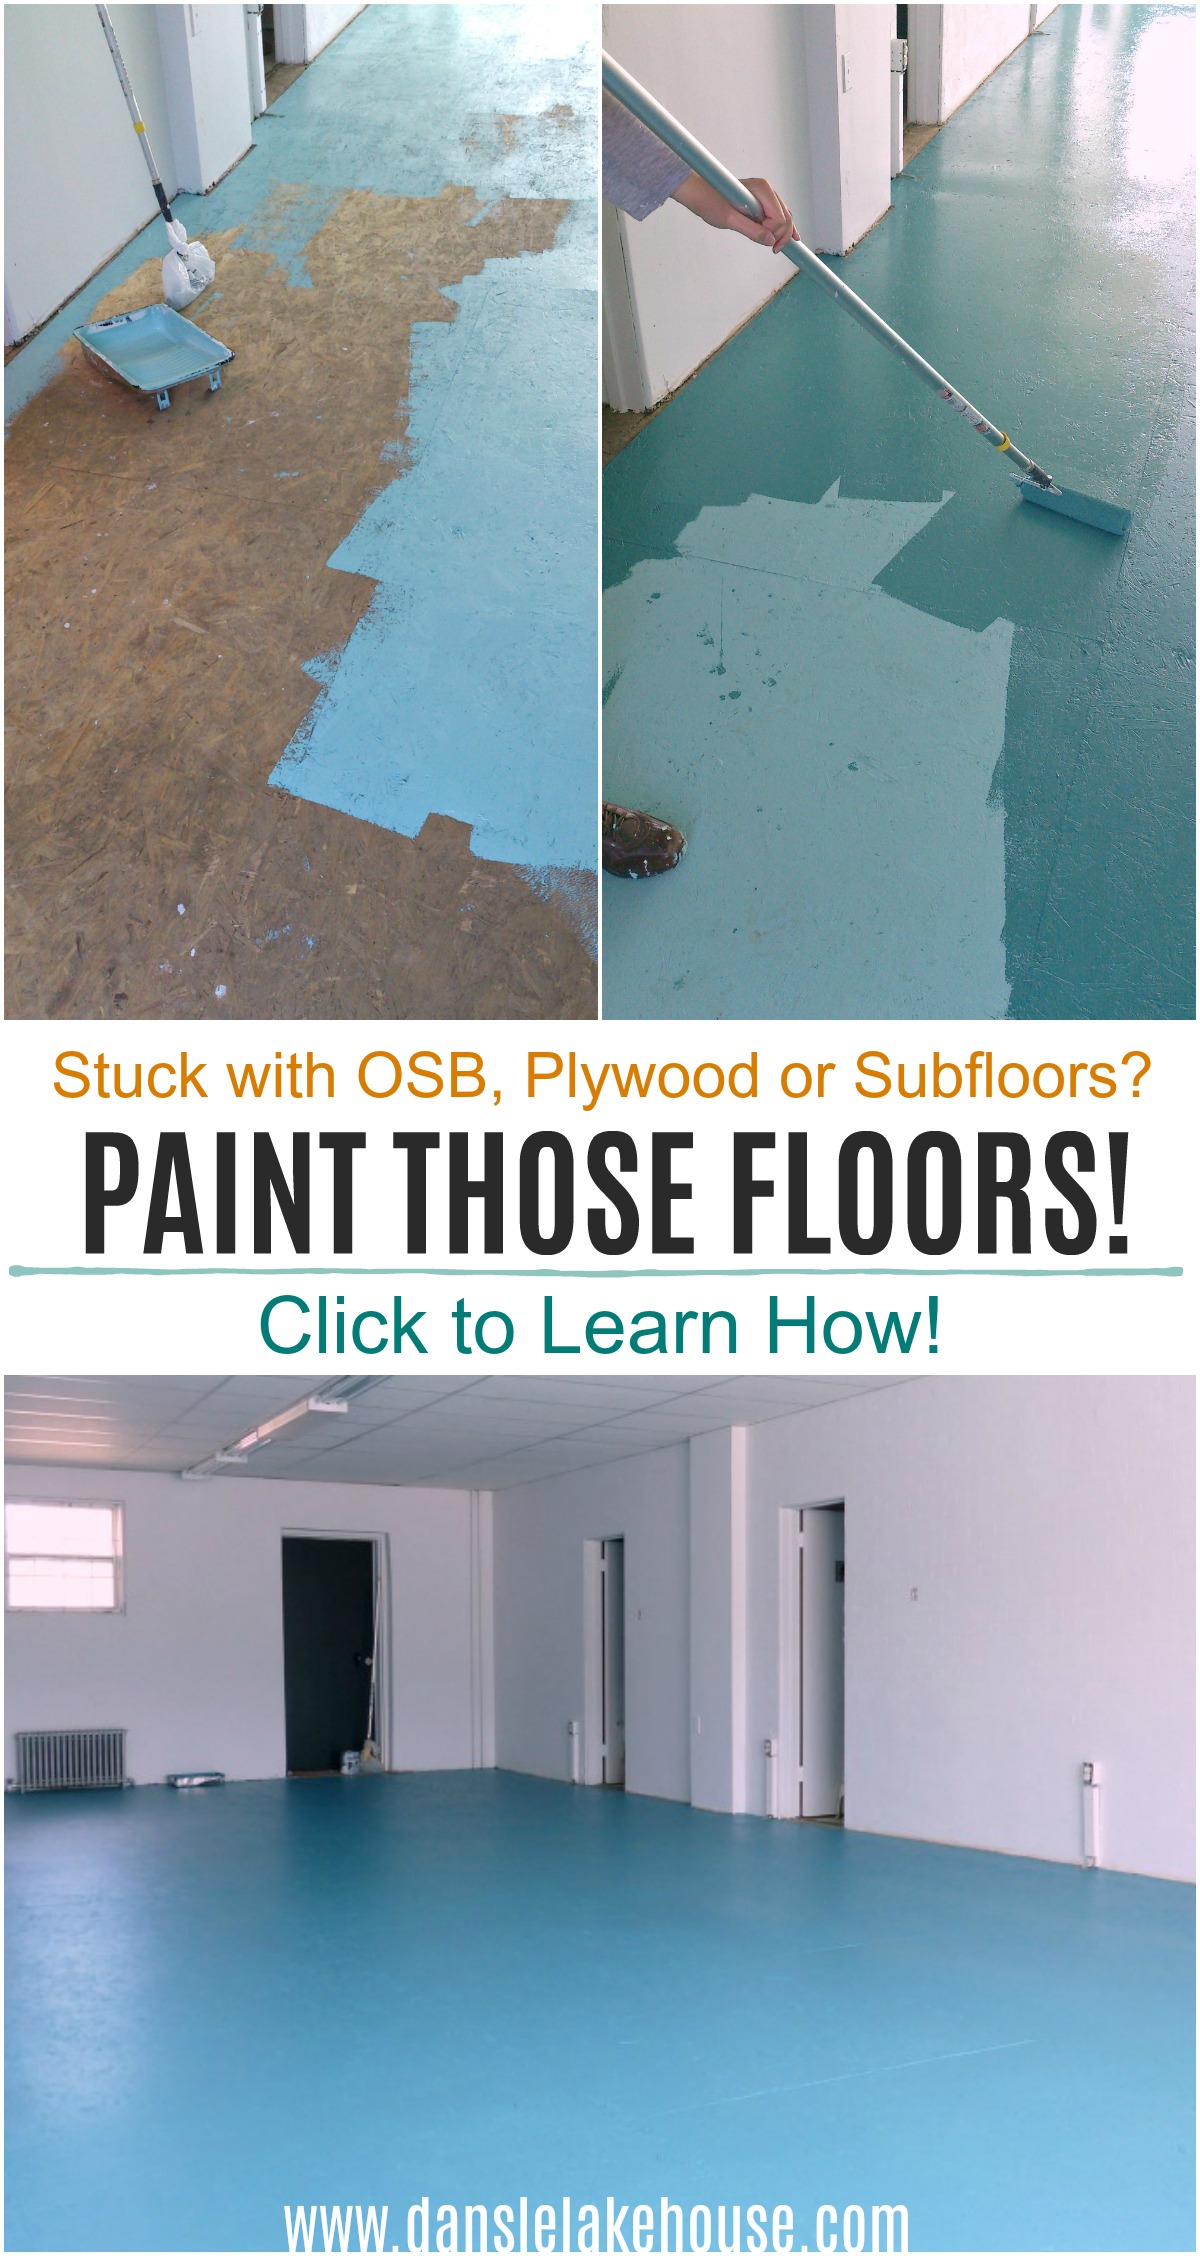 How to Paint OSB Floors